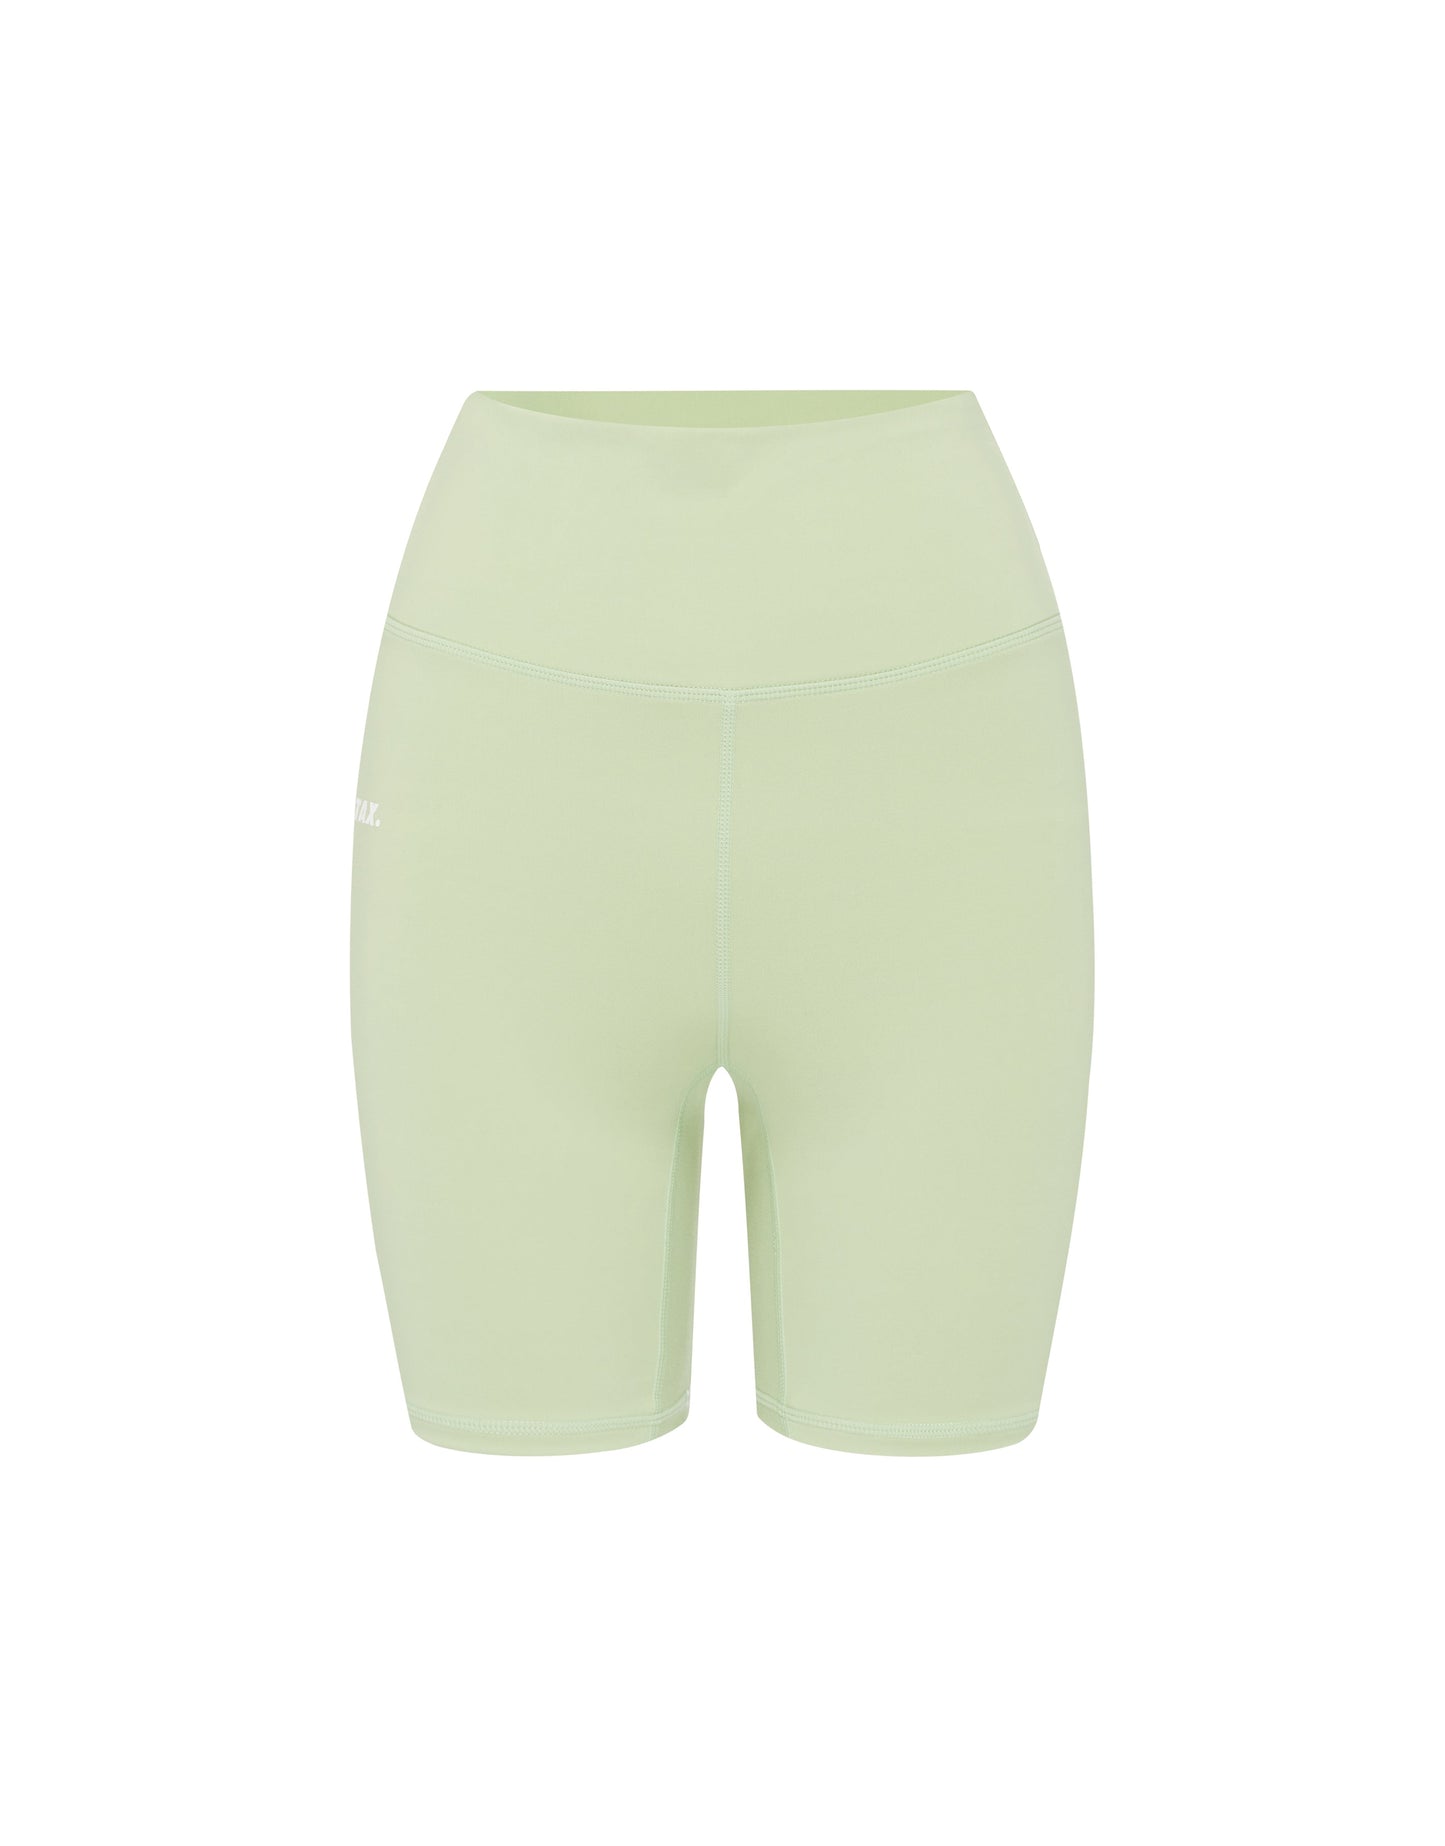 Midi Bike Shorts NANDEX ™ Thistle - Green